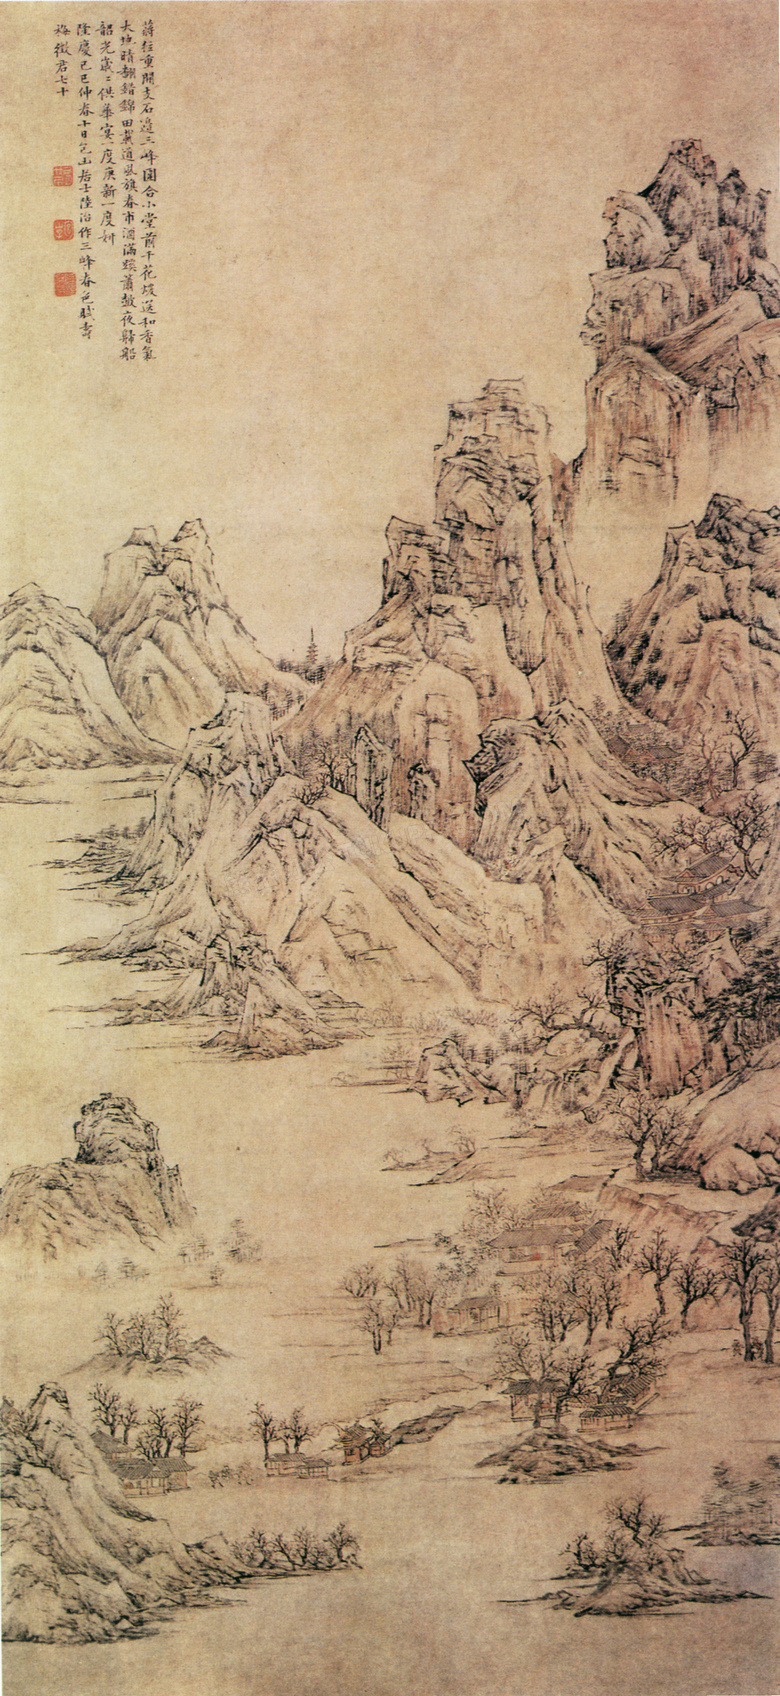 明代陆治的三峰春色图国画高清图片